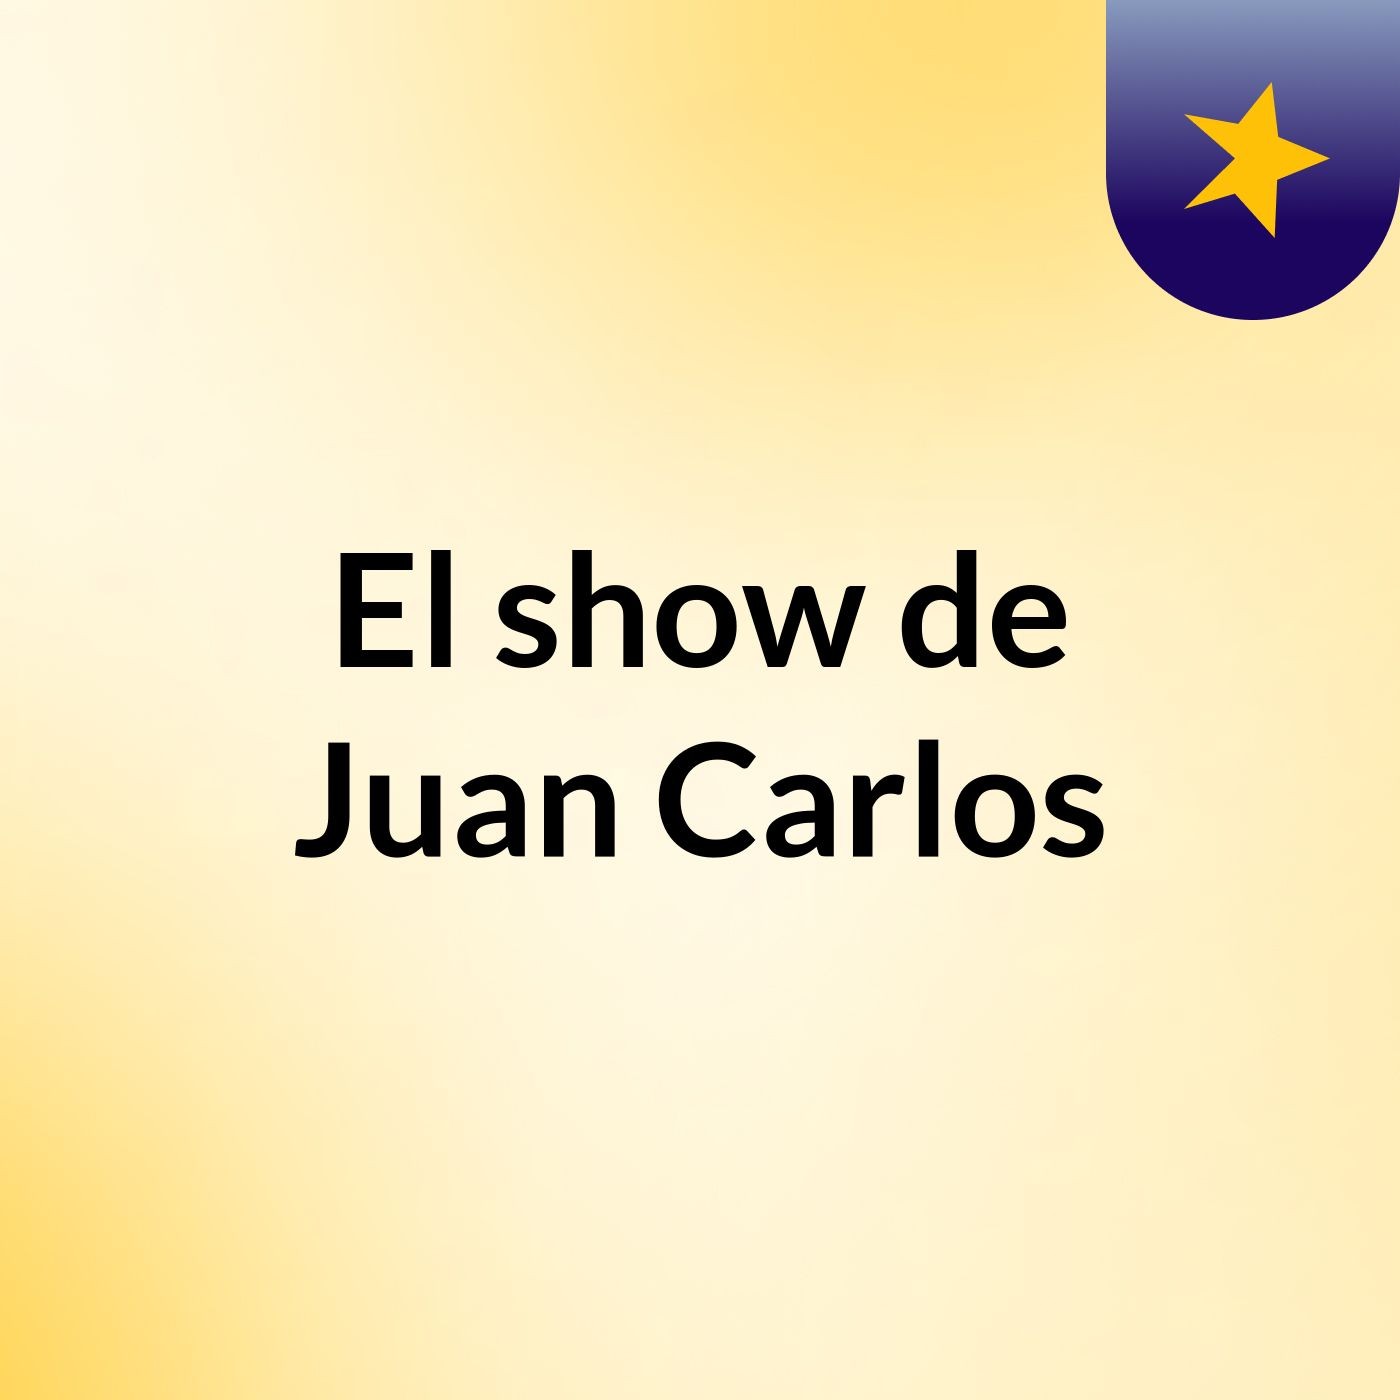 El show de Juan Carlos